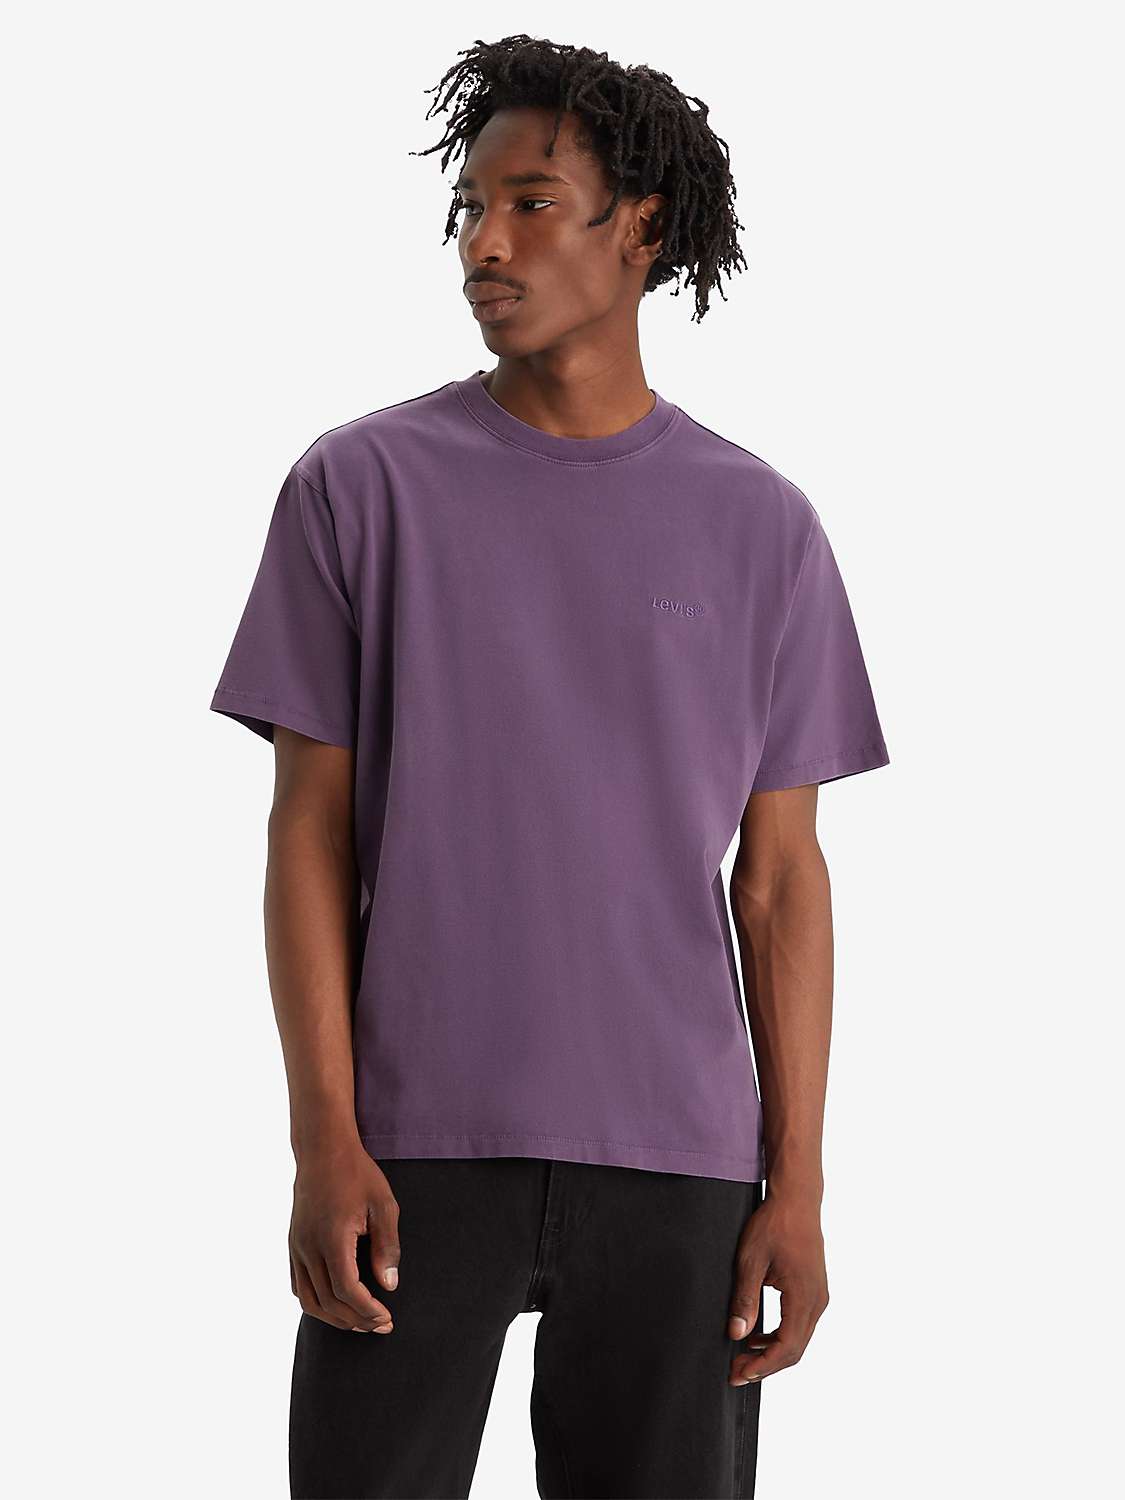 Buy Levi's Short Sleeve Vintage T-Shirt Online at johnlewis.com